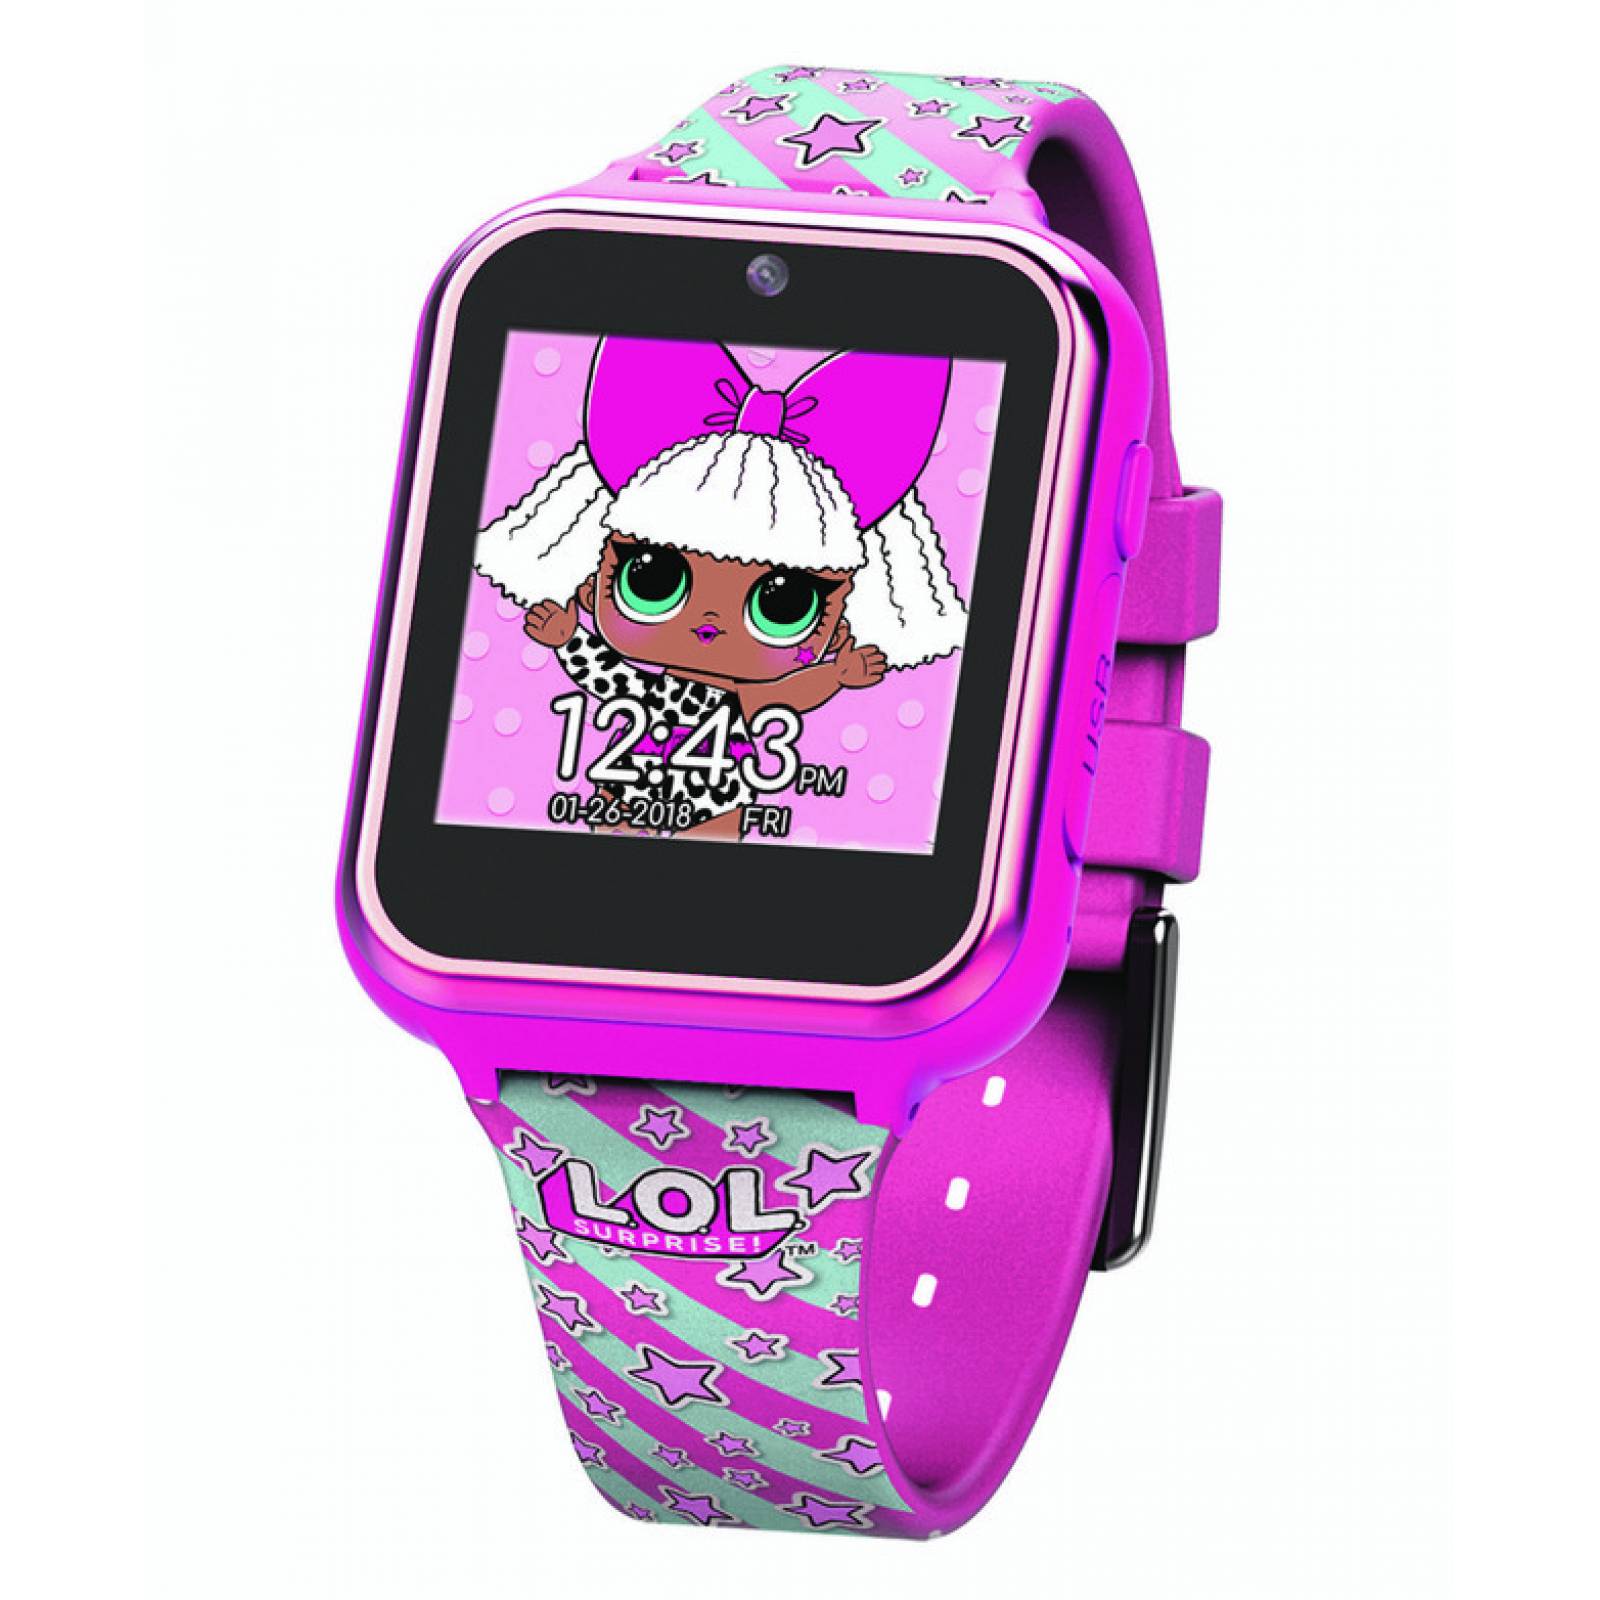 Accutime - LOL Smartwatch Multifunción para Niños